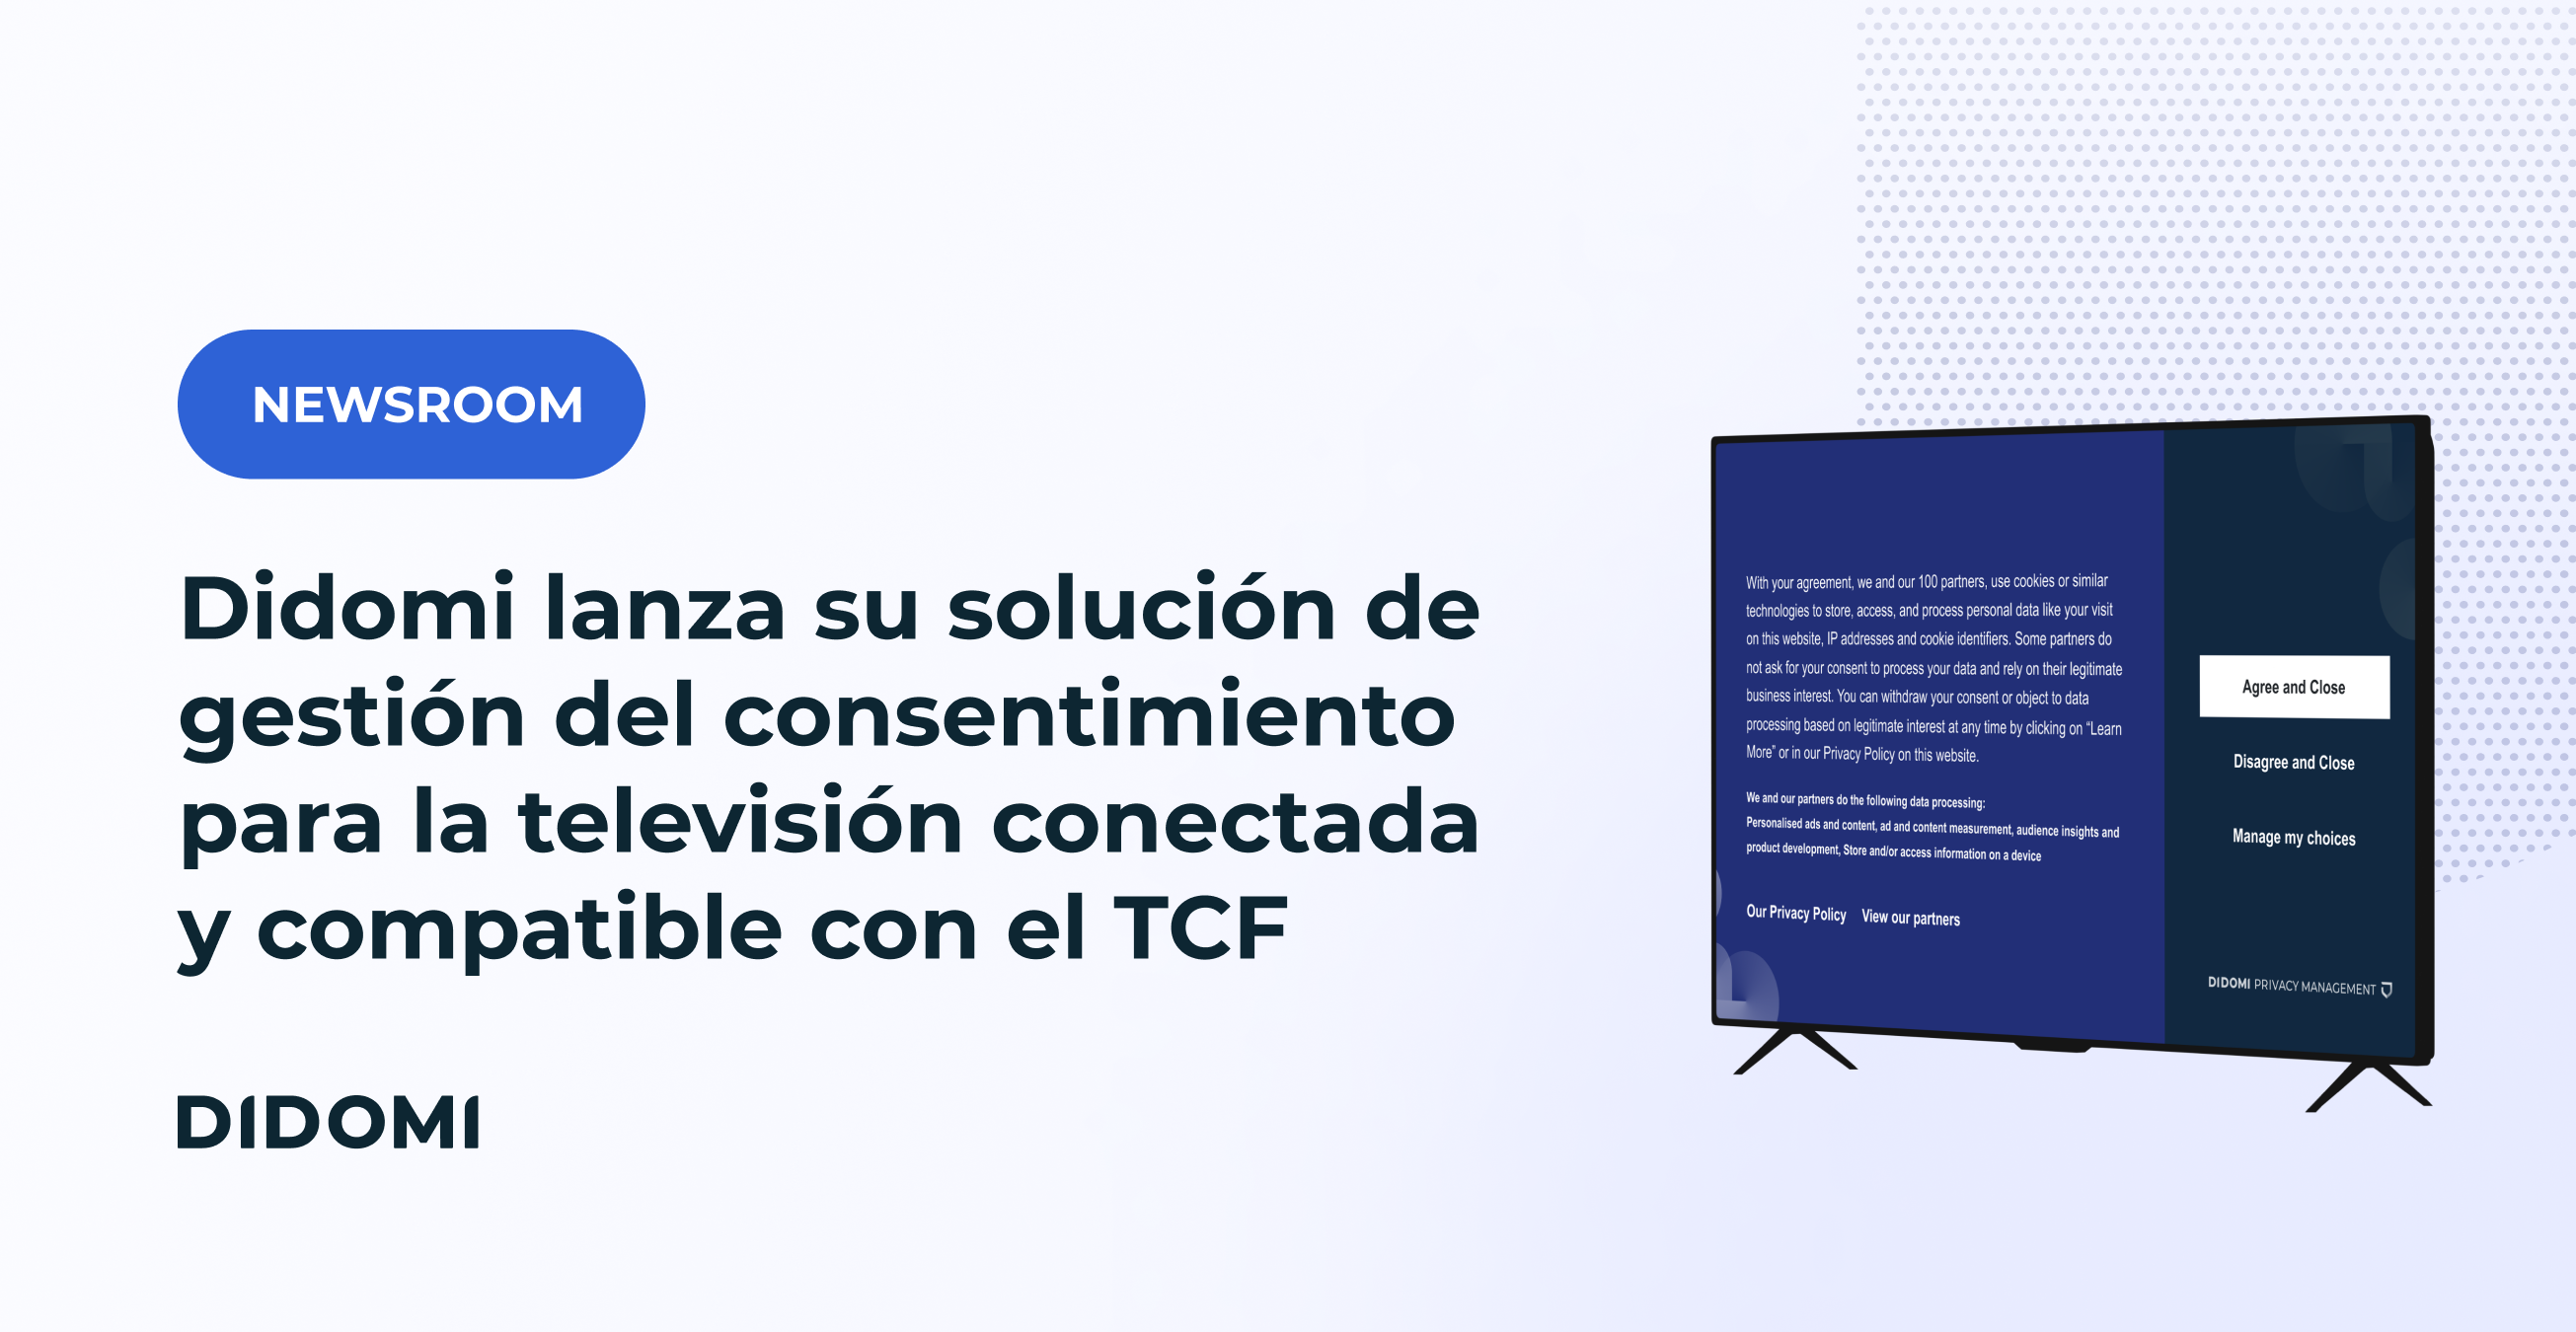 Didomi lanza su solución de gestión del consentimiento para la televisión conectada y compatible con el TCF